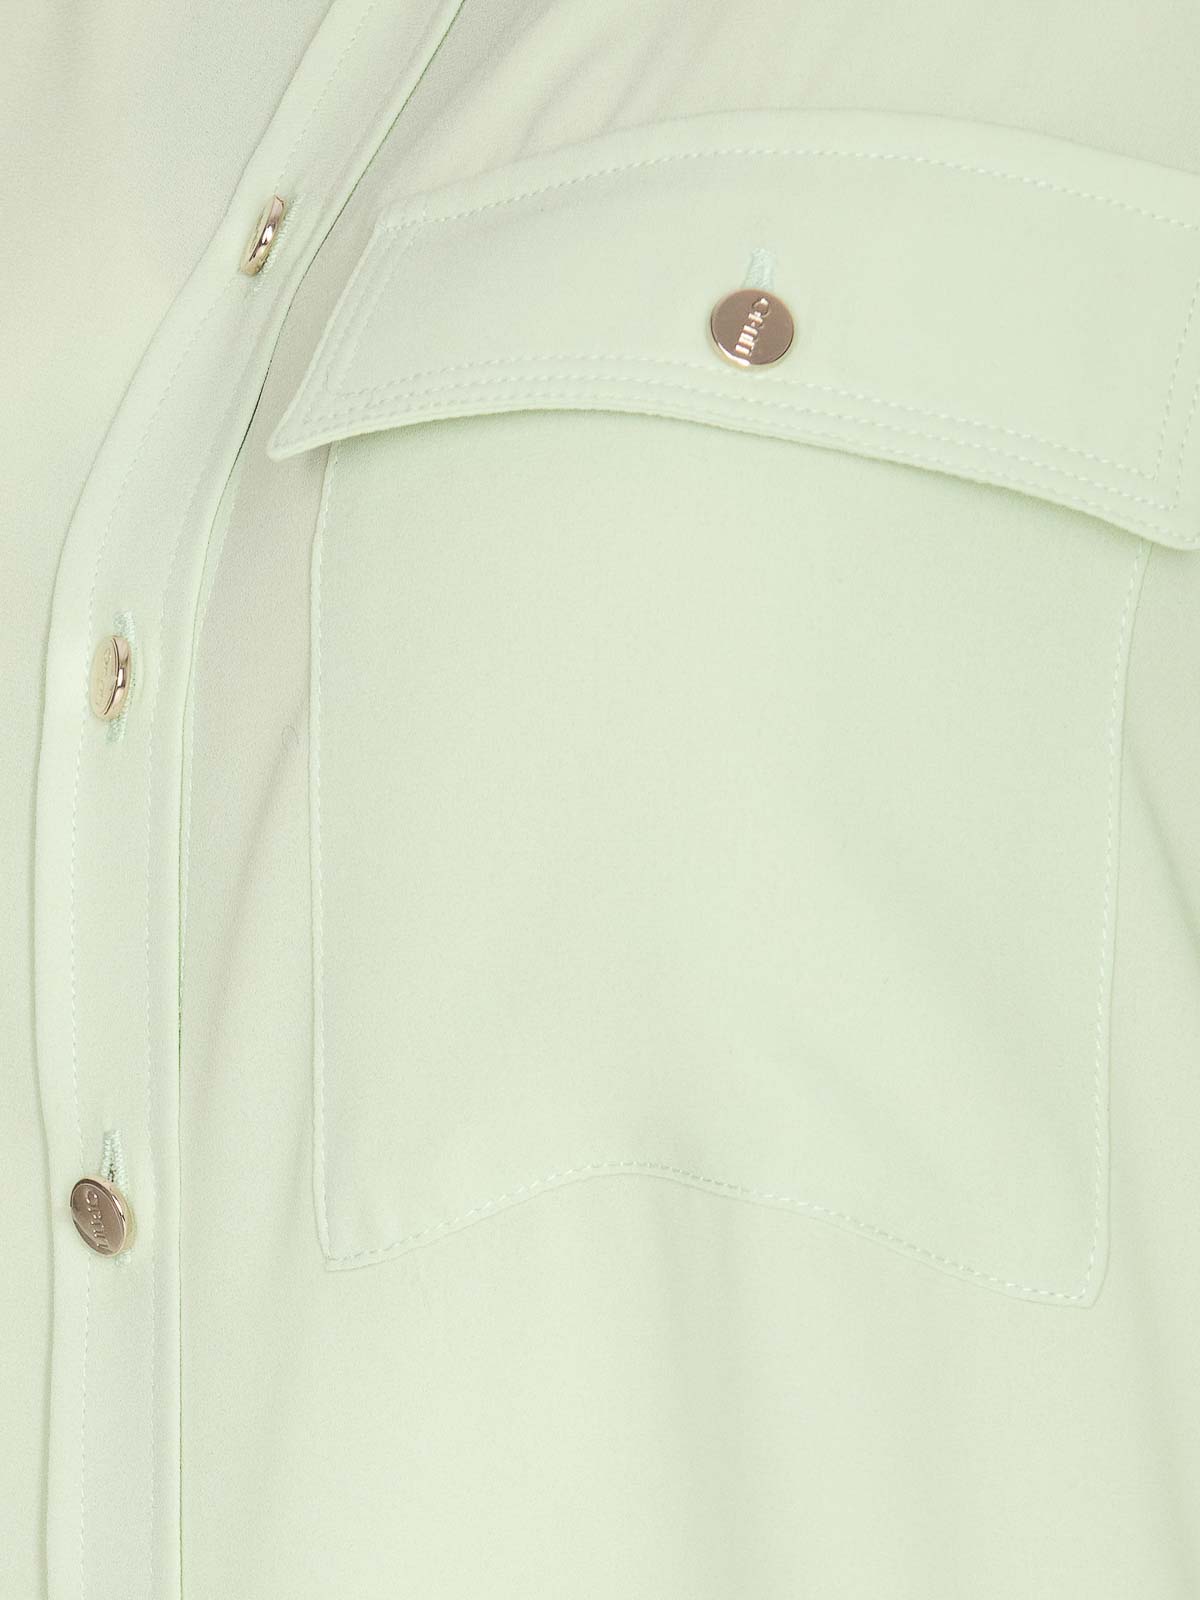 Shop Liu •jo Green Shirt Frontal Buttons Long Sleeves